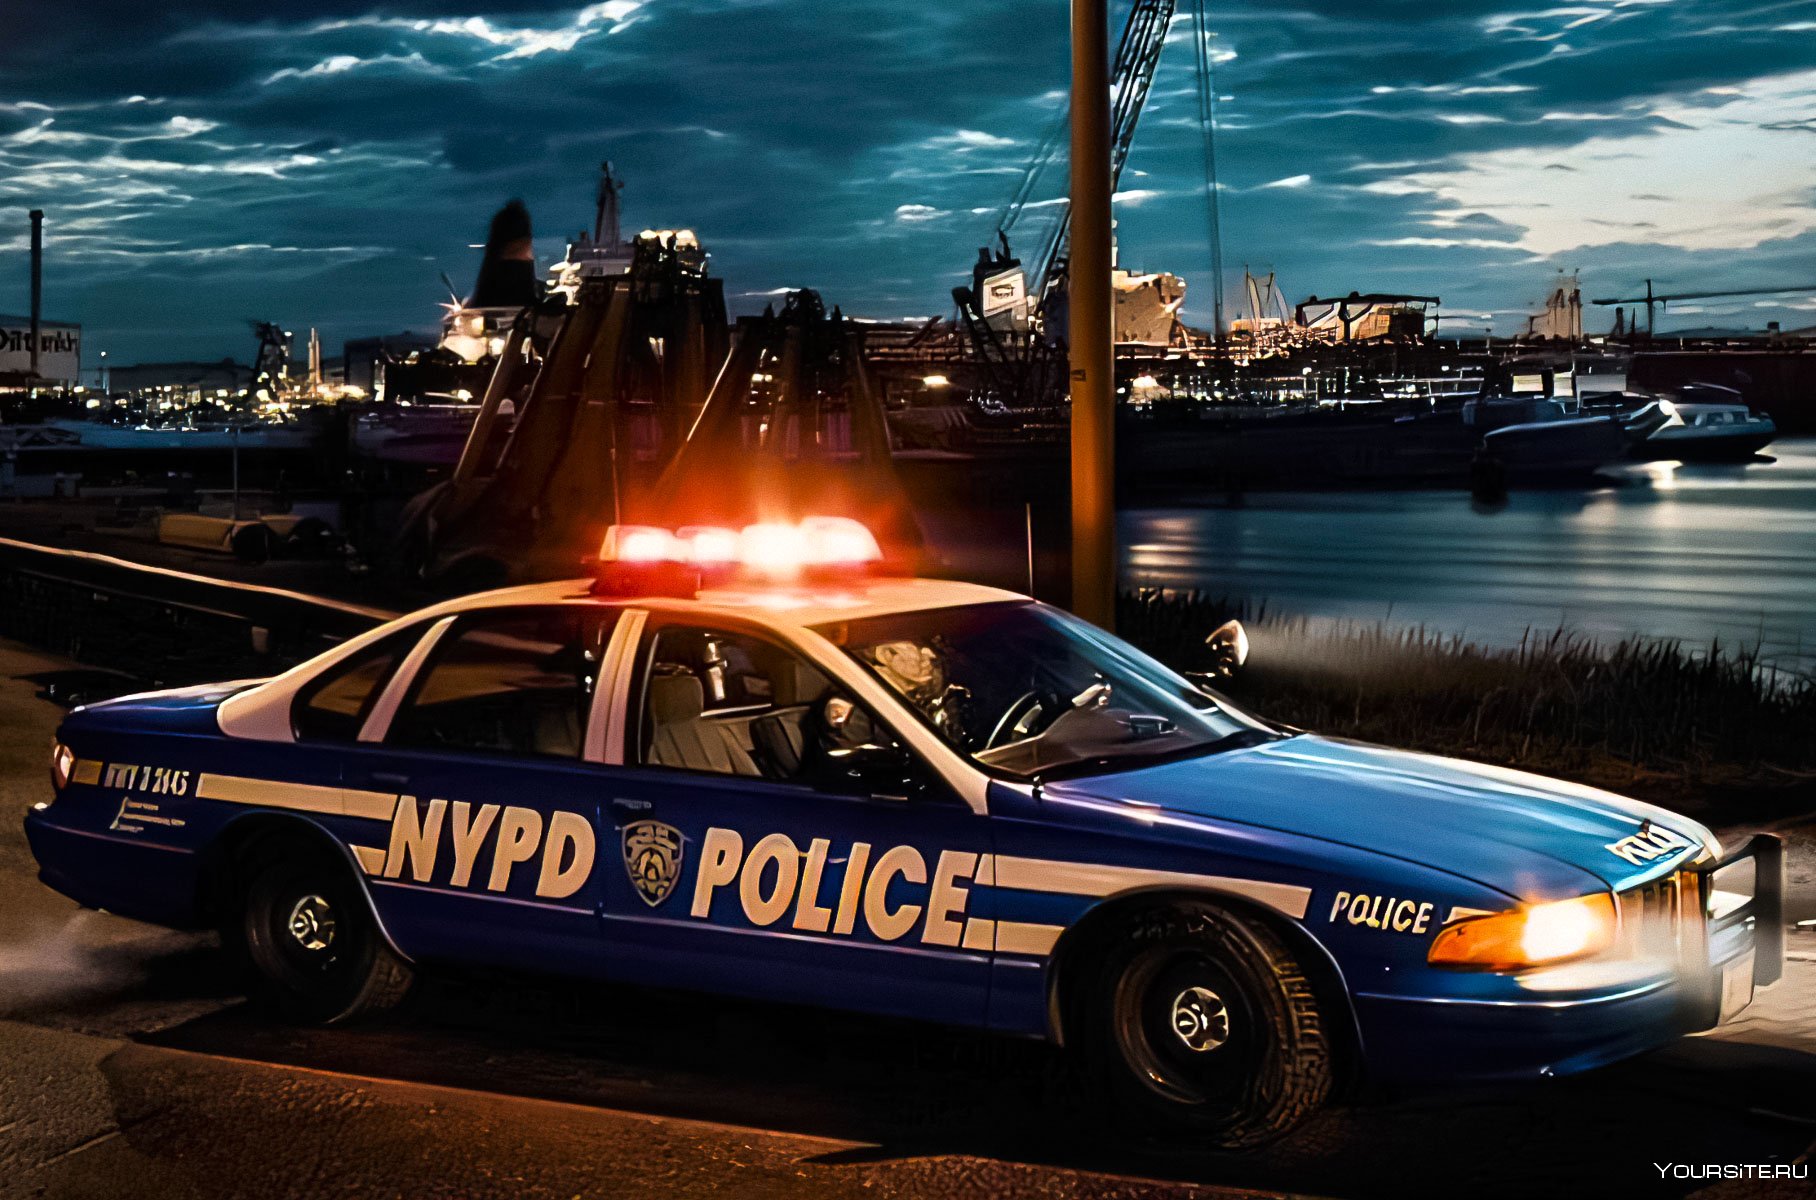 Нужны полицейские машины. Chevrolet Caprice 1993 Police. Chevrolet Caprice 2015 Police. Chevrolet Caprice 9c1 Police. 1986 Chevrolet Caprice 9c1.